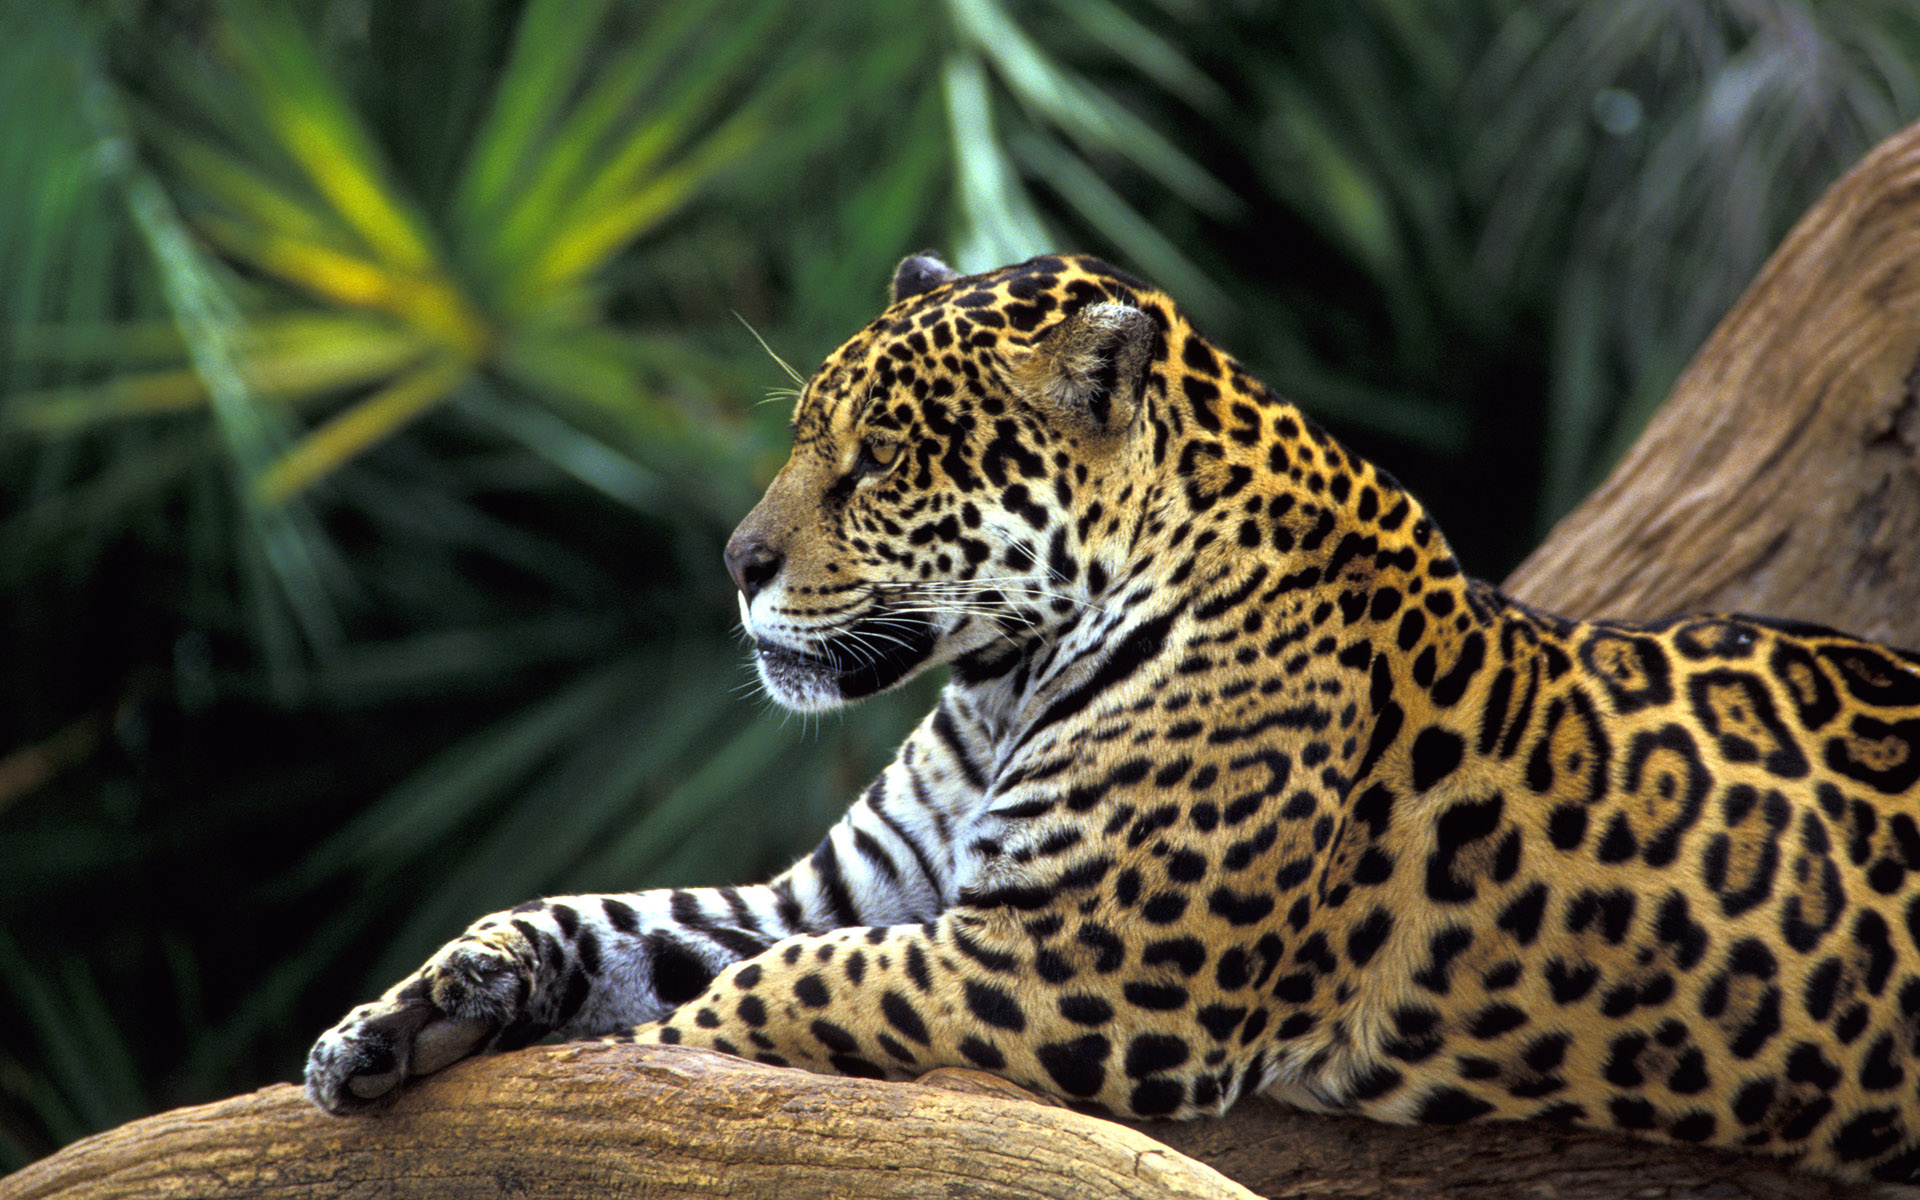 Jaguar in Amazon Rainforest1617210652 - Jaguar in Amazon Rainforest - Rainforest, Kittens, Jaguar, Amazon